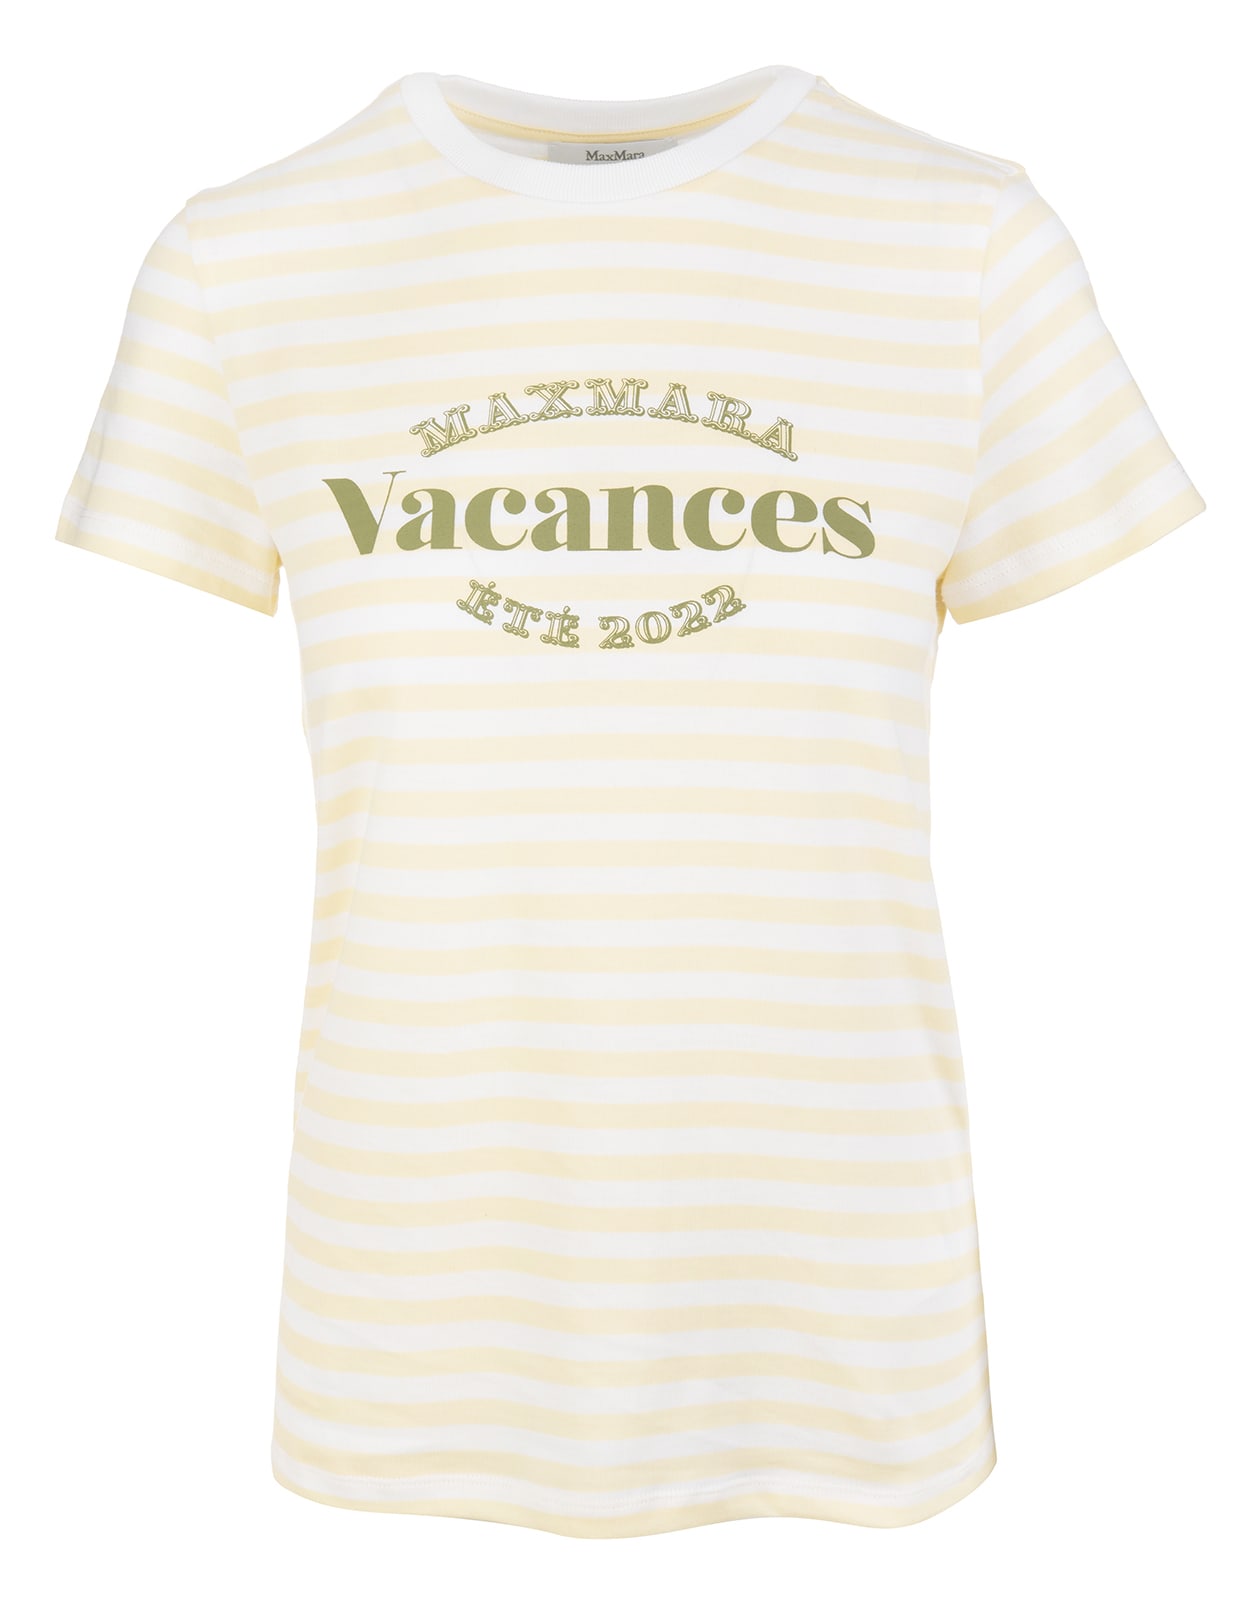 Max Mara Caprera vacances T-shirt